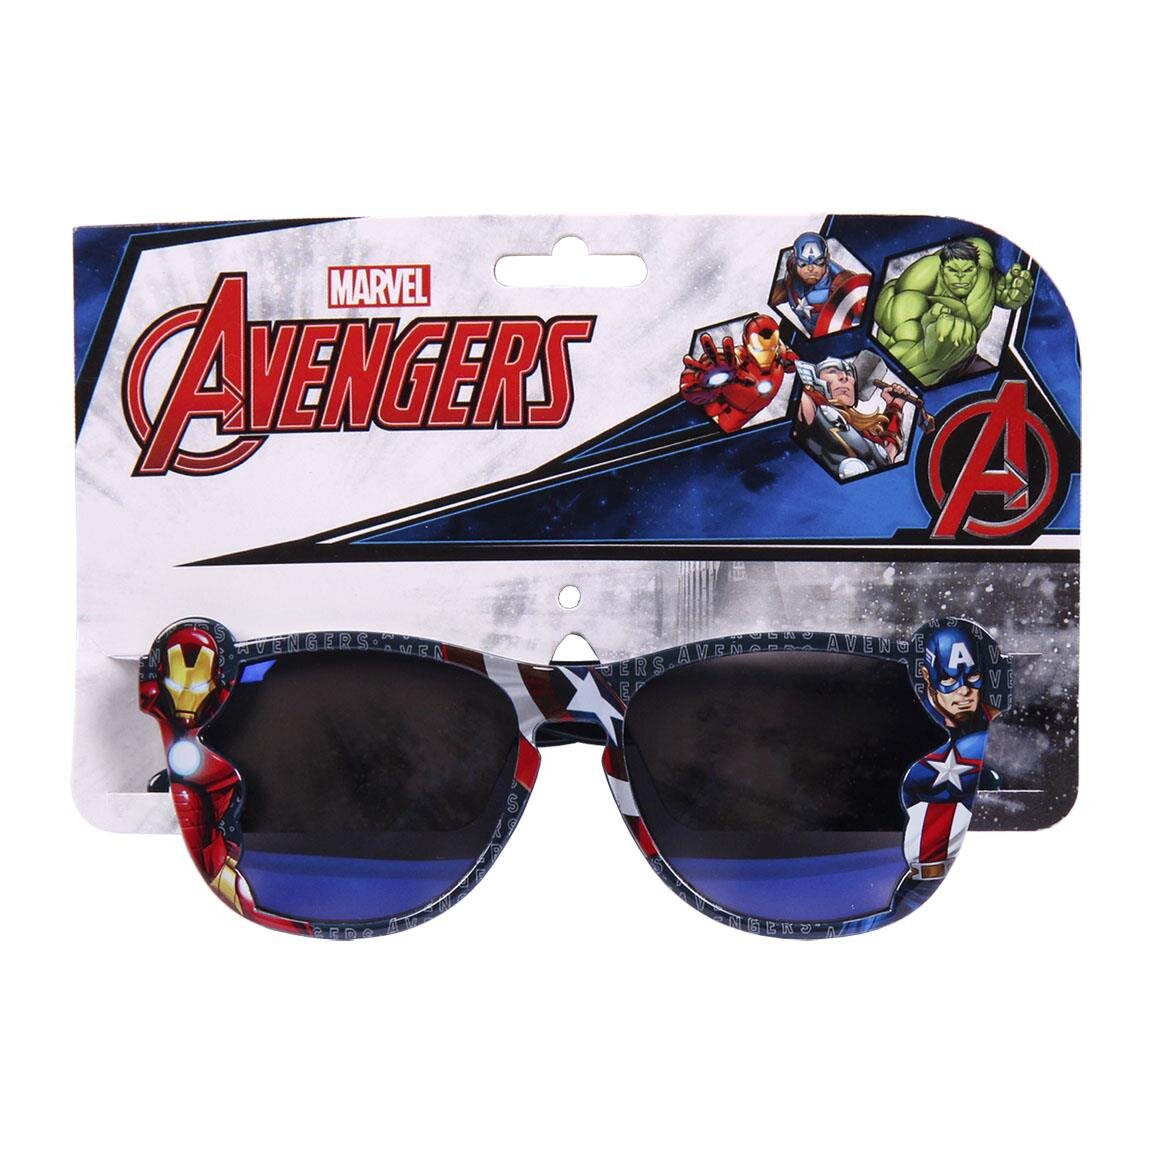 Avengers Marvel - Solbriller til barn